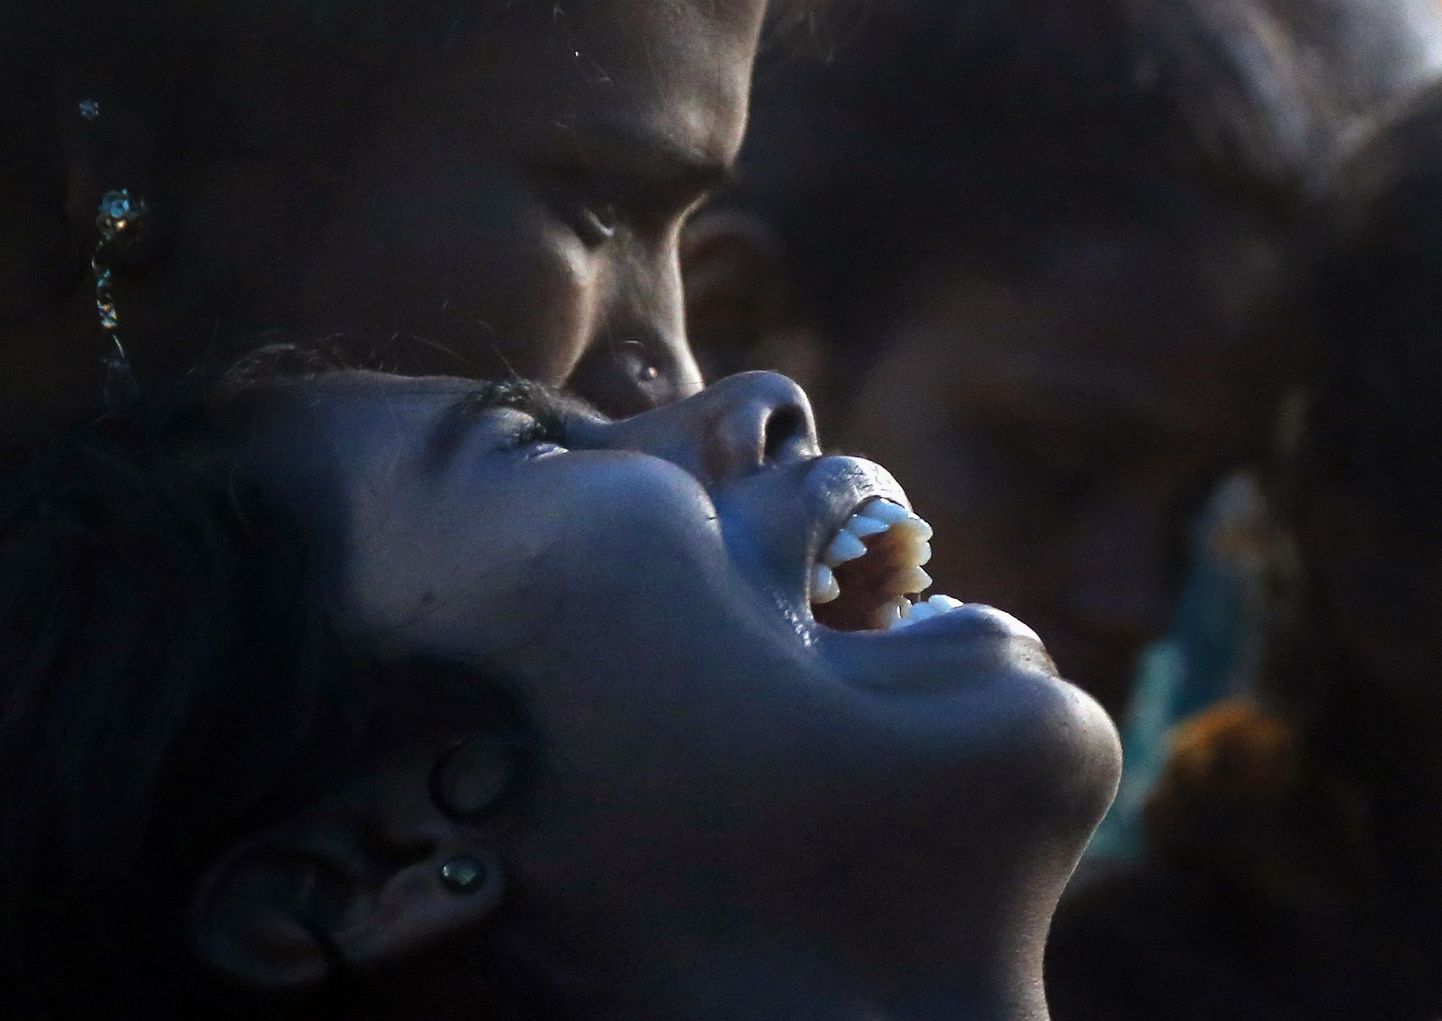 India naine nutab taga perekonna liiget, kes suri puskarist tingitud mürgistusse.